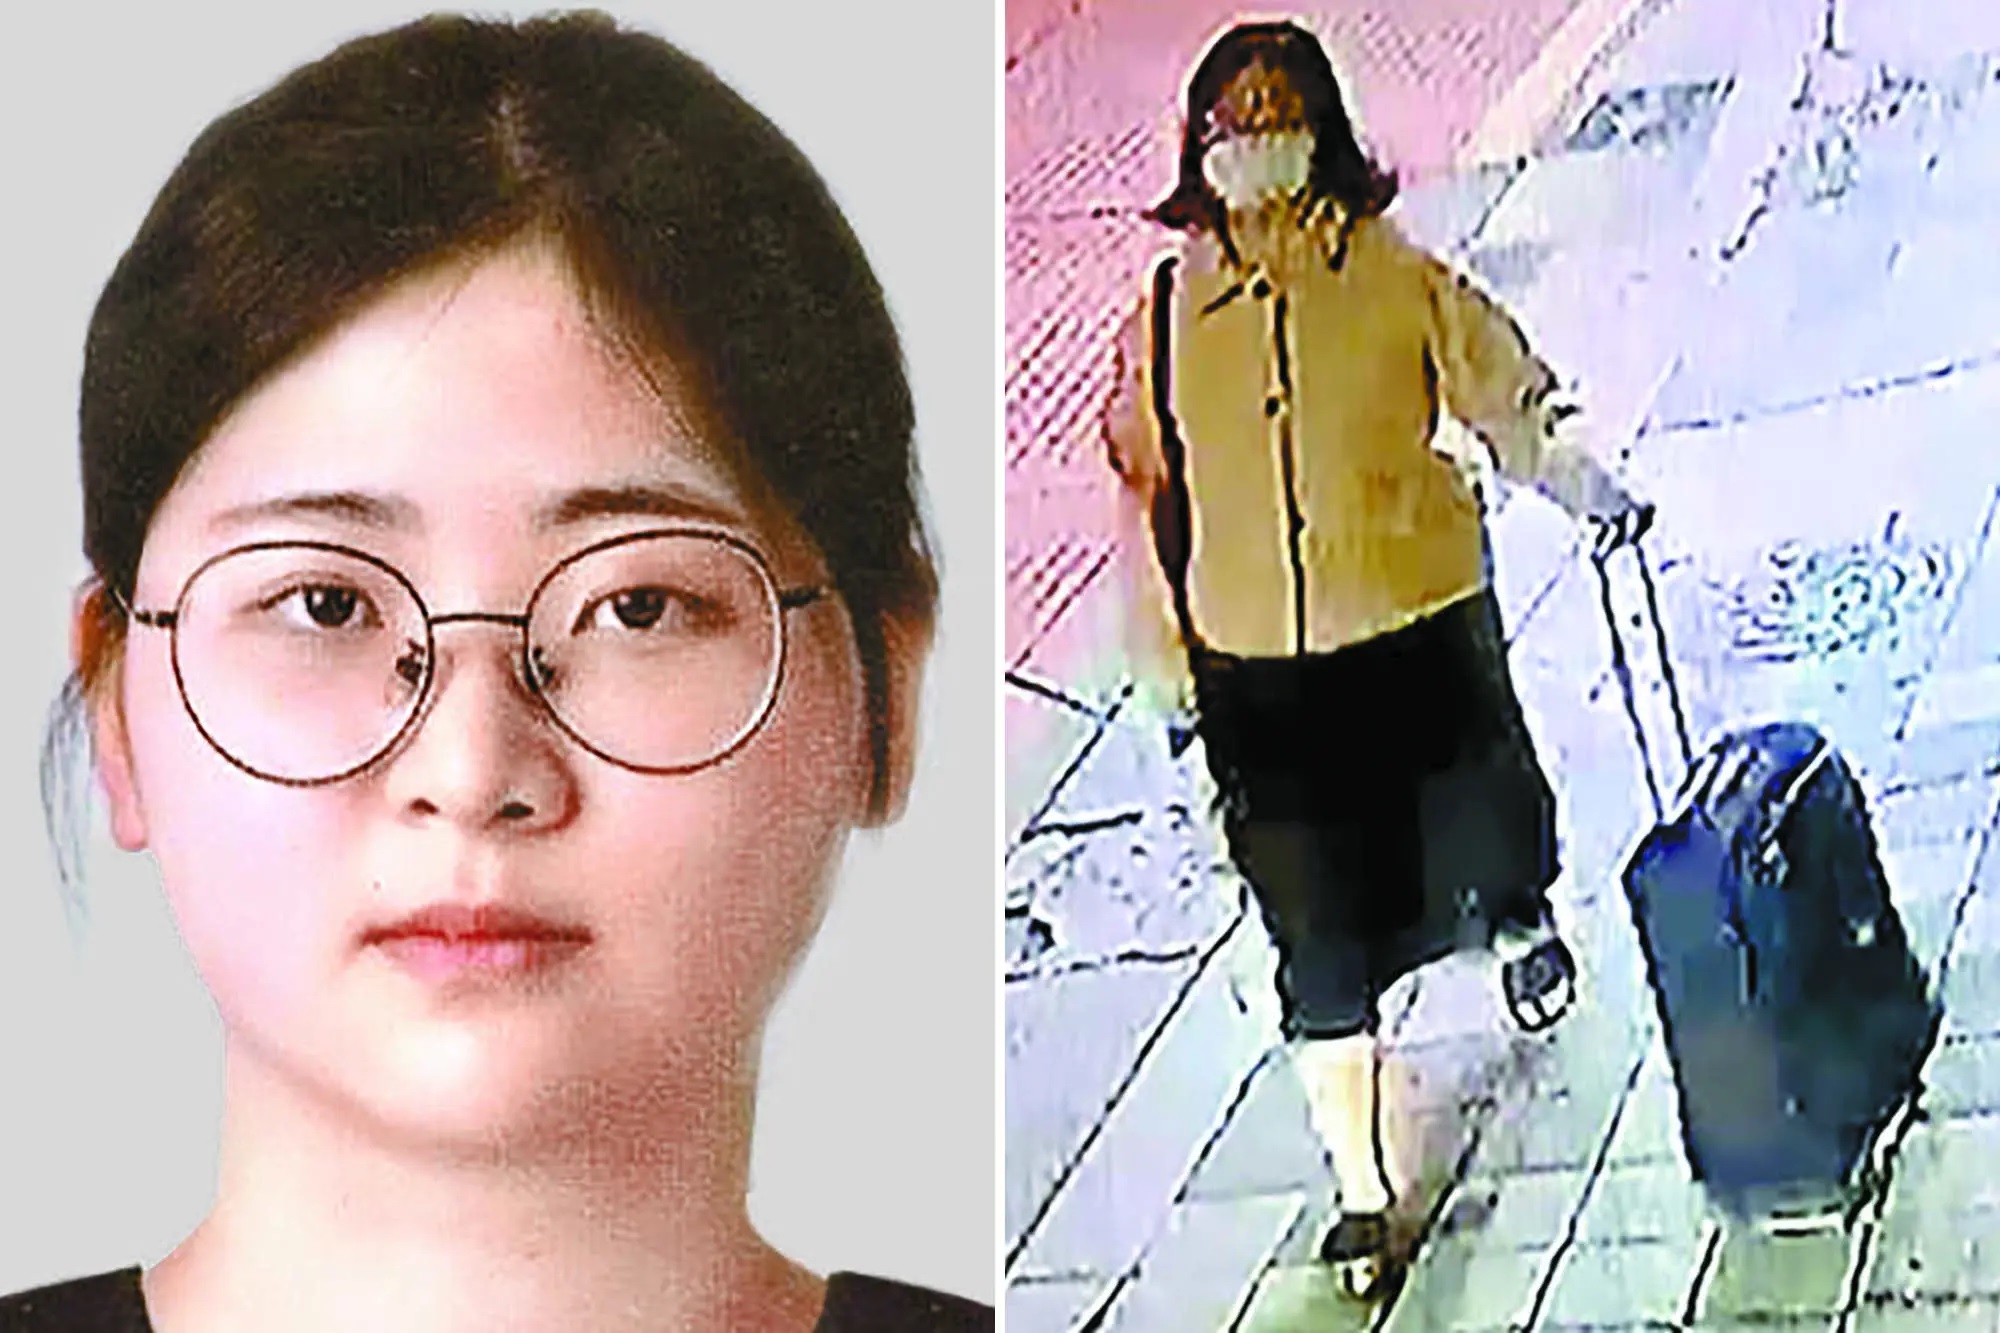 Hàn Quốc: Xem phim tội phạm giết người quá nhiều, cô gái “tò mò” làm theo - 1